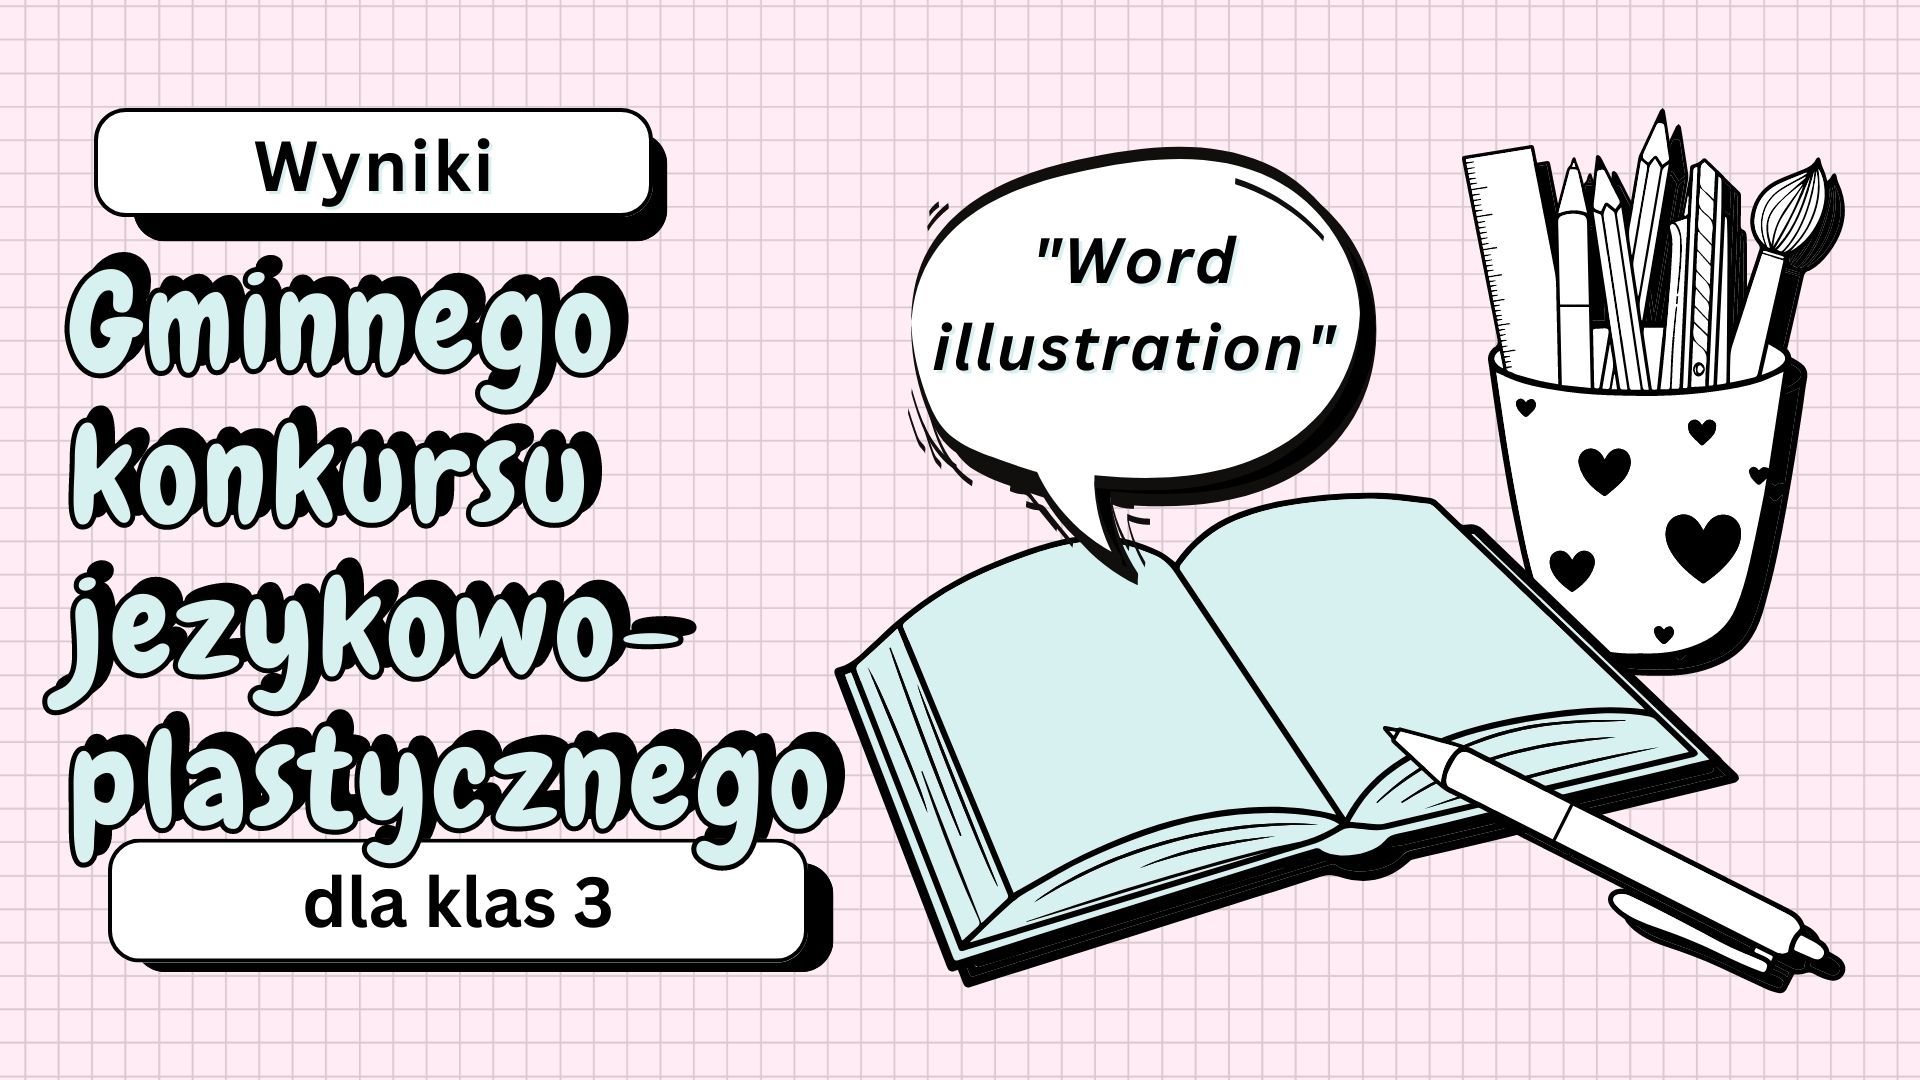 Wyniki Gminnego konkursu językowo-plastycznego dla klas 3 "Word illustration"